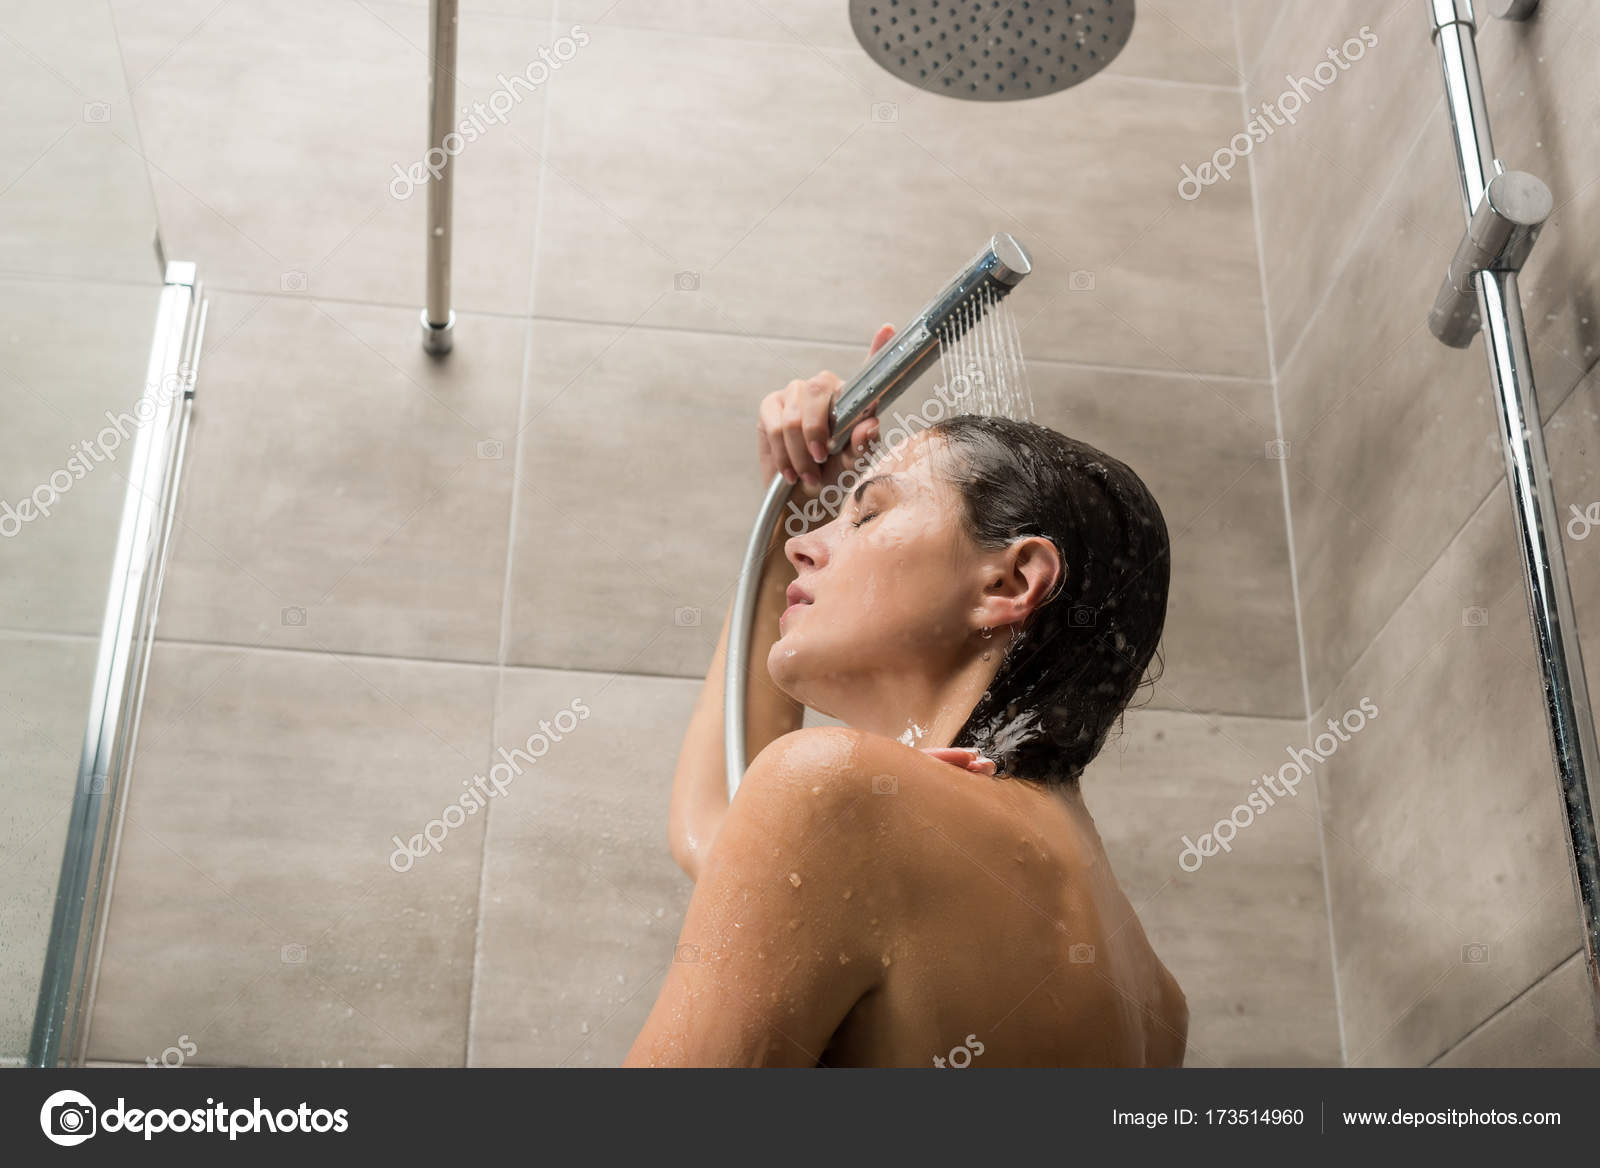 girl taking showers naked